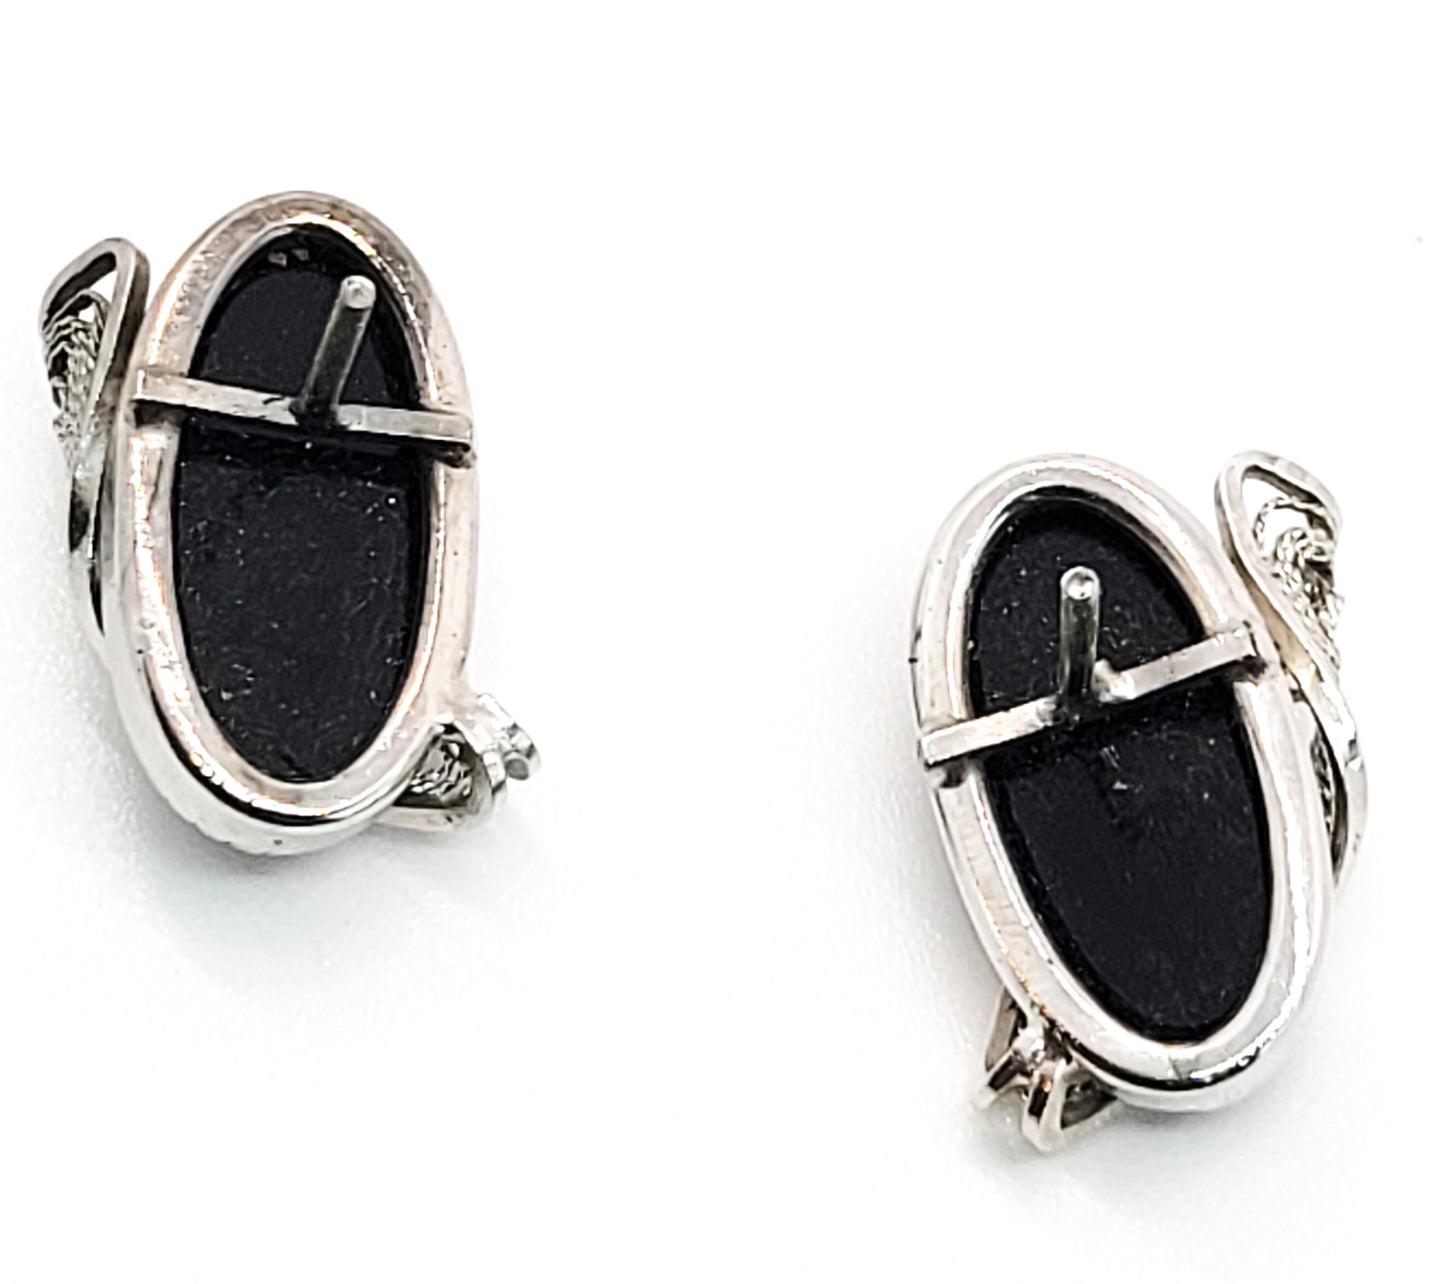 Black Onyx gemstone sterling silver threaded post vintage earrings